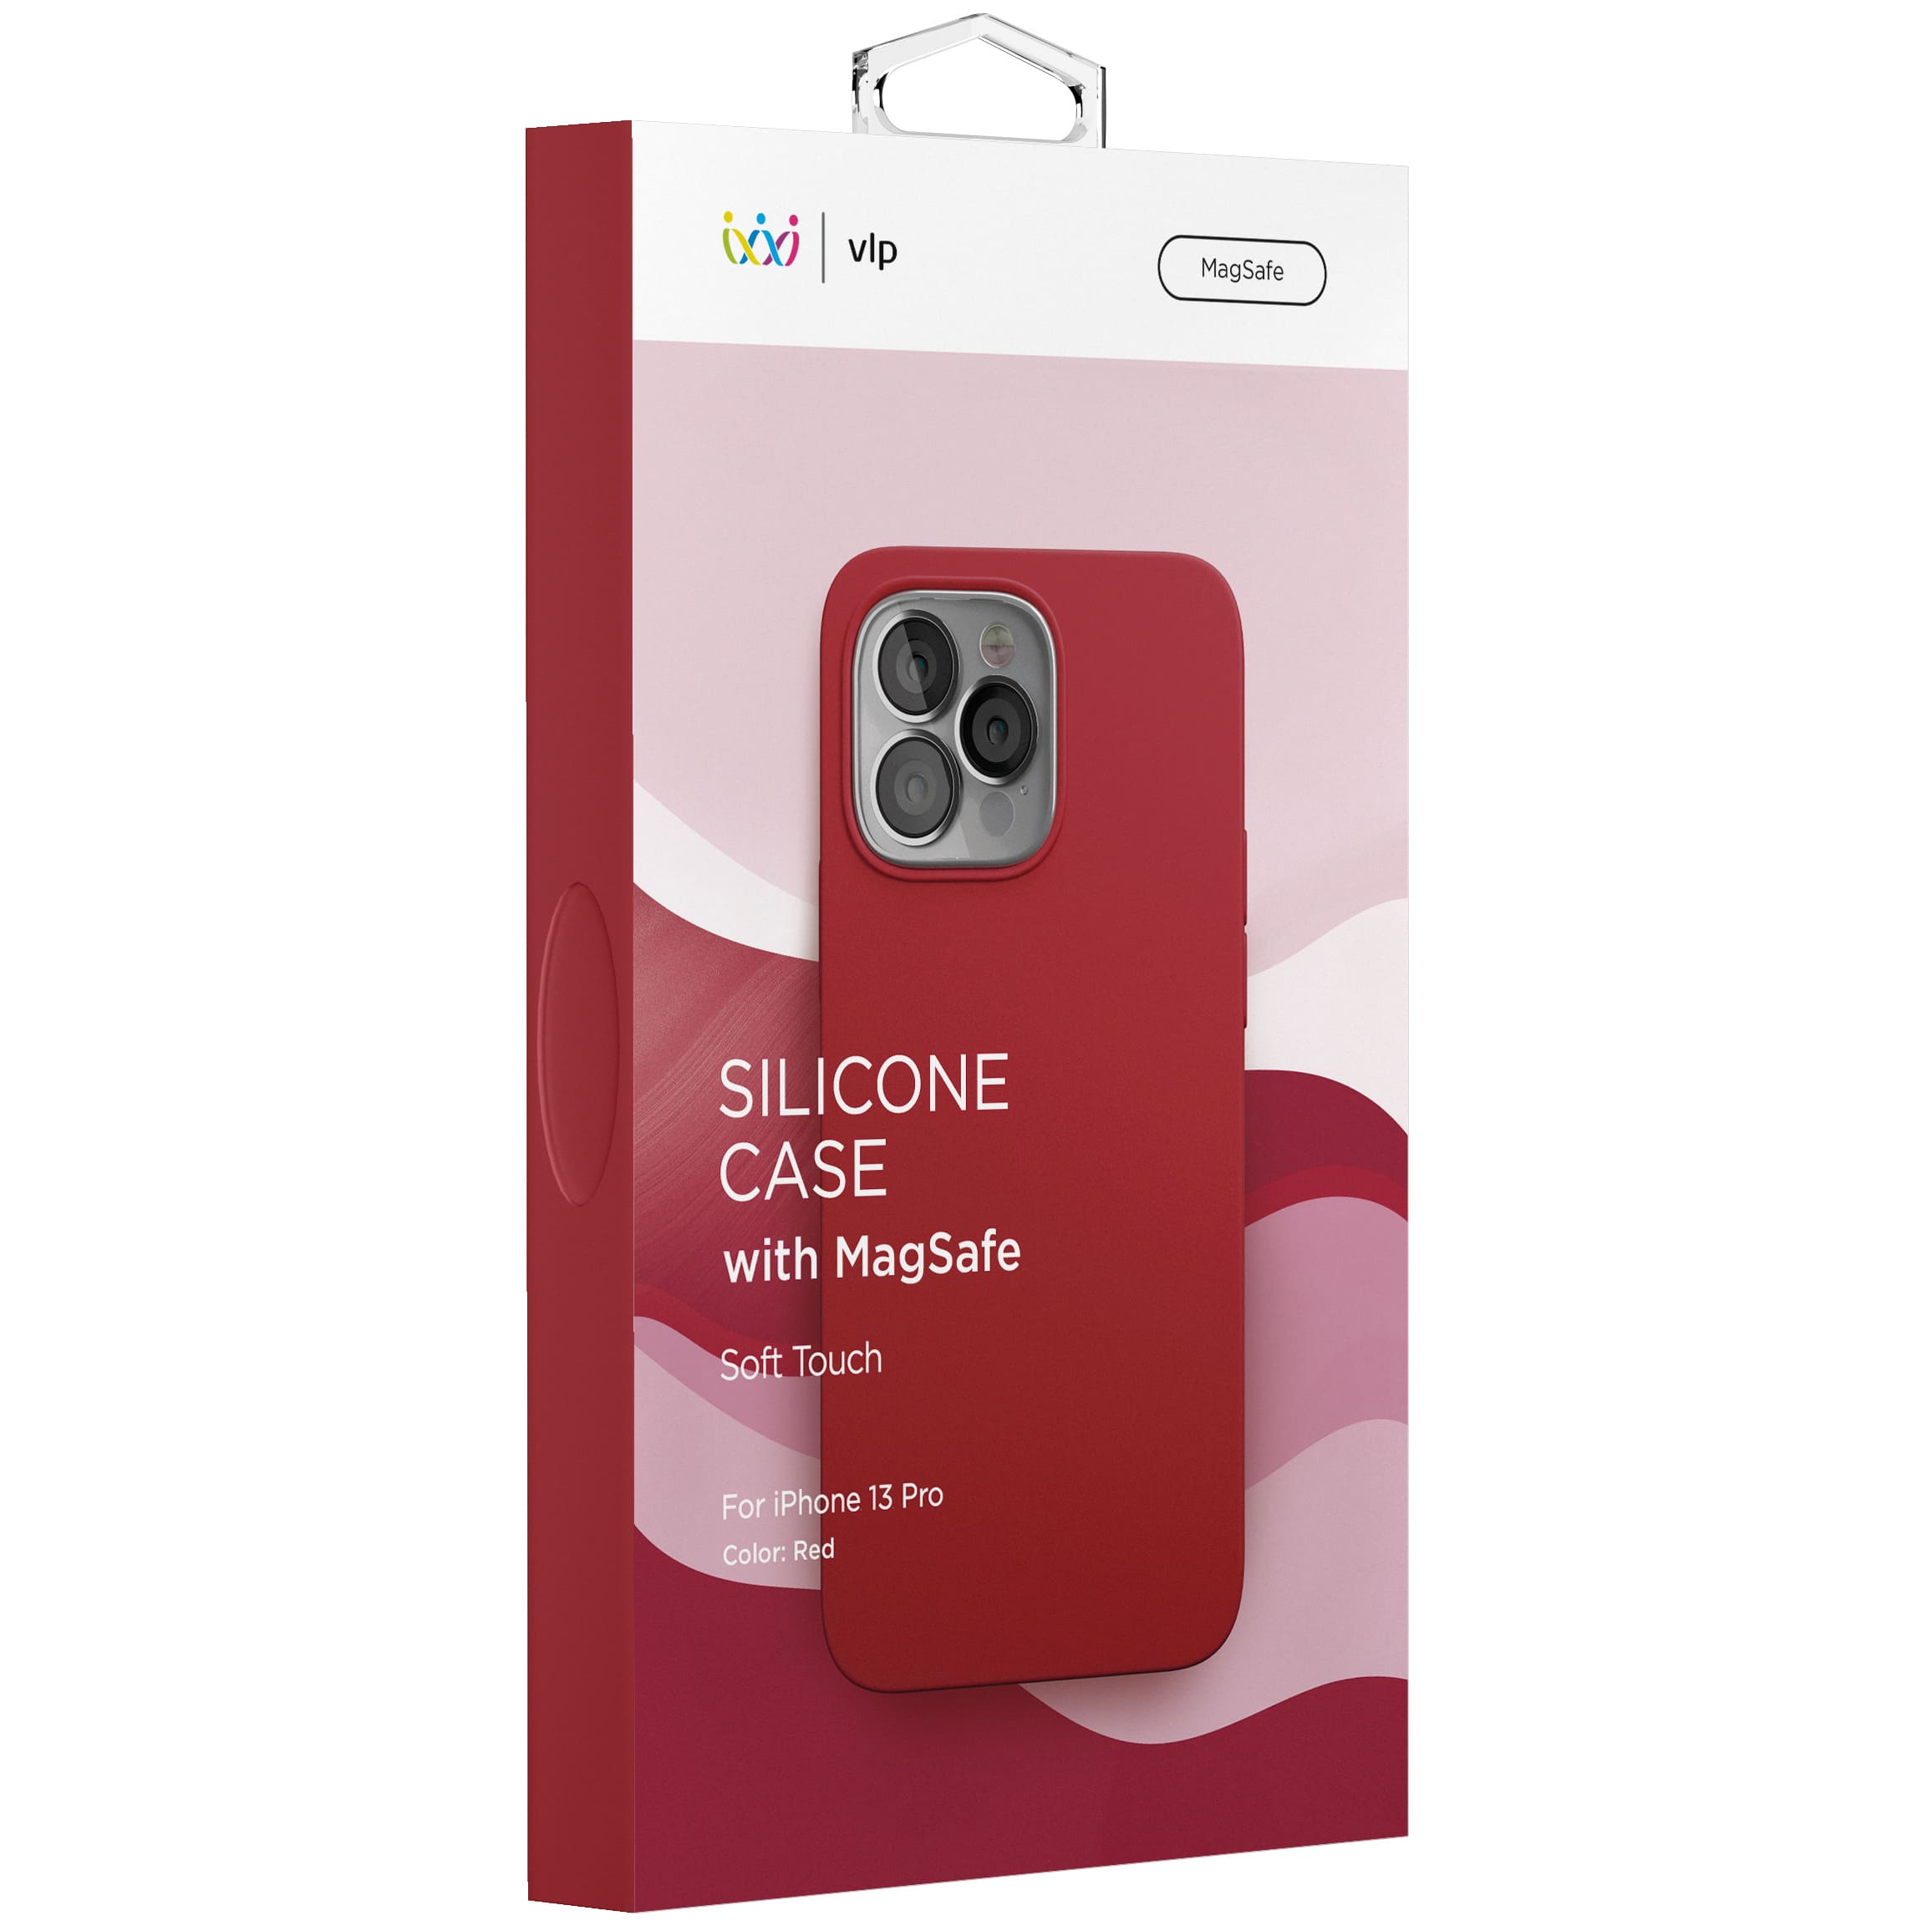 Фото — Чехол для смартфона vlp Silicone case with MagSafe для iPhone 13 Pro, красный